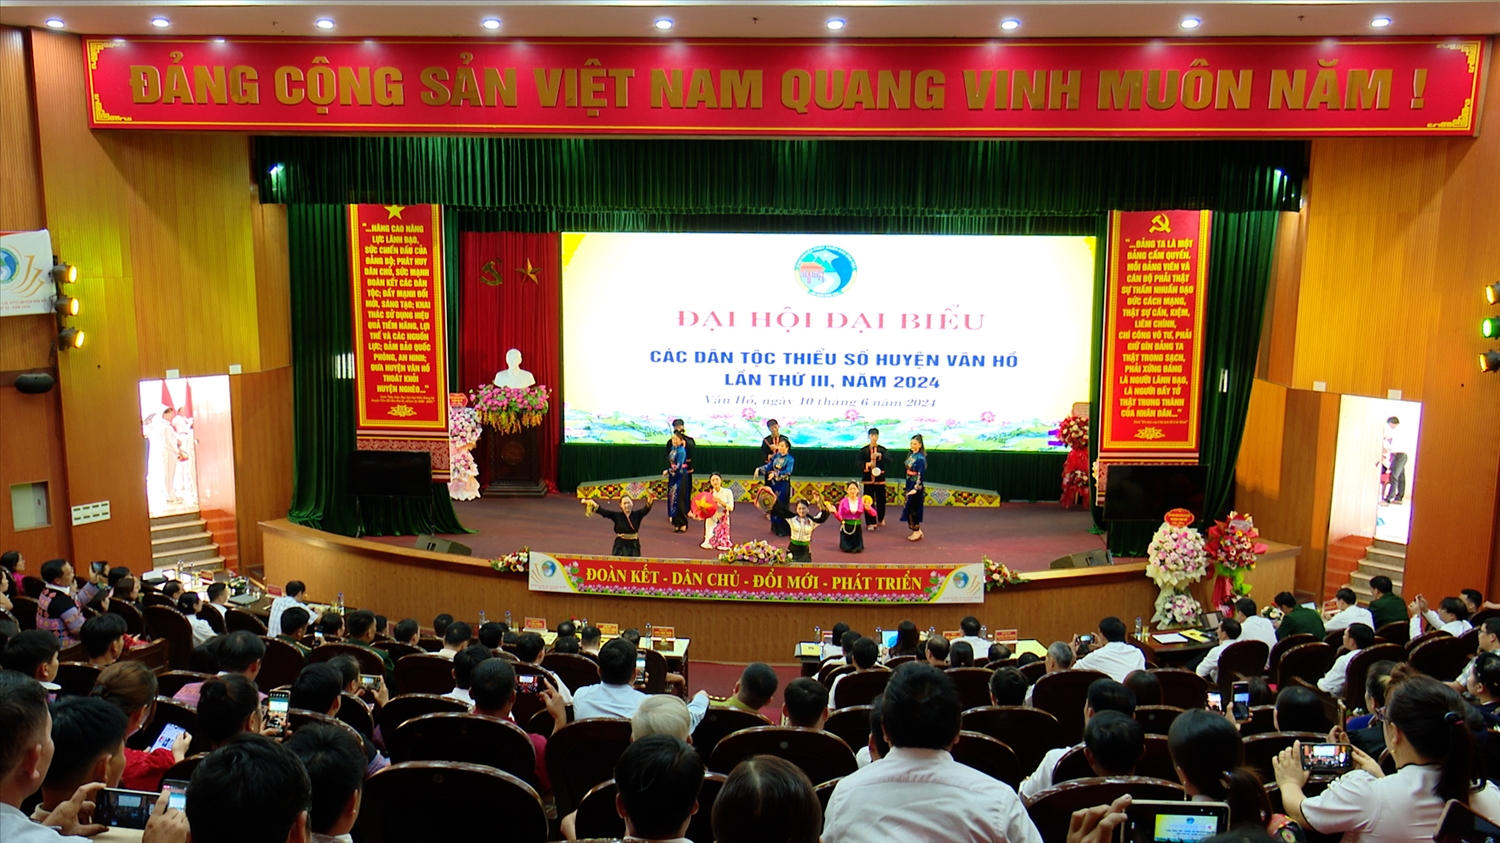 Đại hội Đại biểu các dân tộc thiểu số huyện Vân Hồ lần thứ III, năm 2024 có sự tham dự của 150 đại biểu đại diện cho hơn 66.000 đồng bào các dân tộc thiểu số trên địa bàn huyện